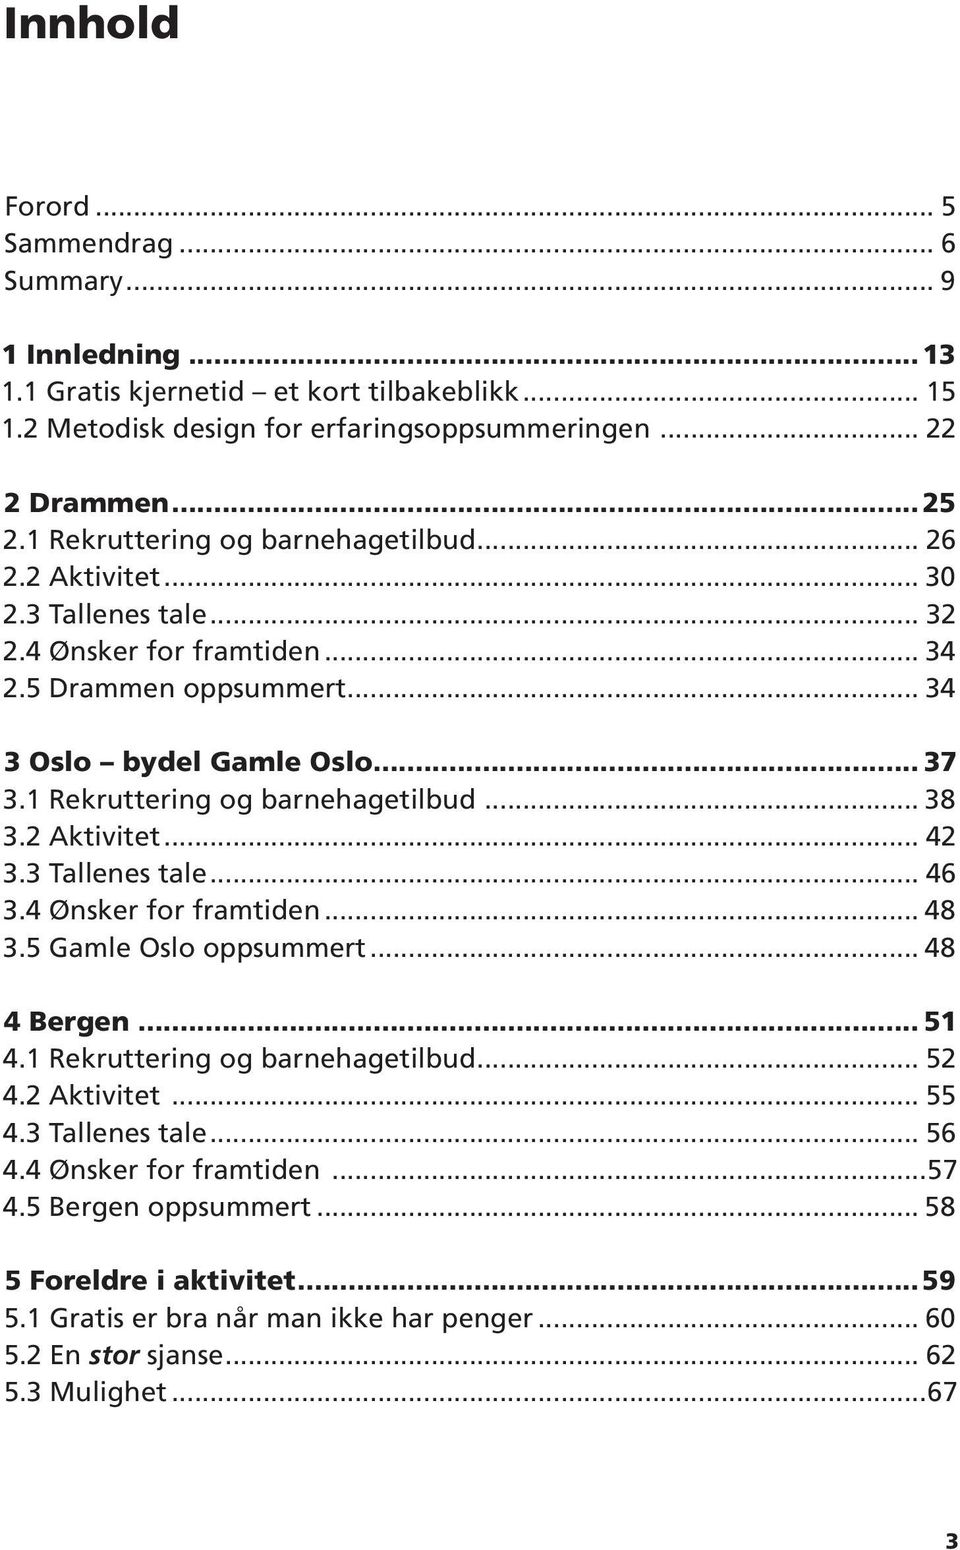 1 Rekruttering og barnehagetilbud... 38 3.2 Aktivitet... 42 3.3 Tallenes tale... 46 3.4 Ønsker for framtiden... 48 3.5 Gamle Oslo oppsummert... 48 4 Bergen... 51 4.